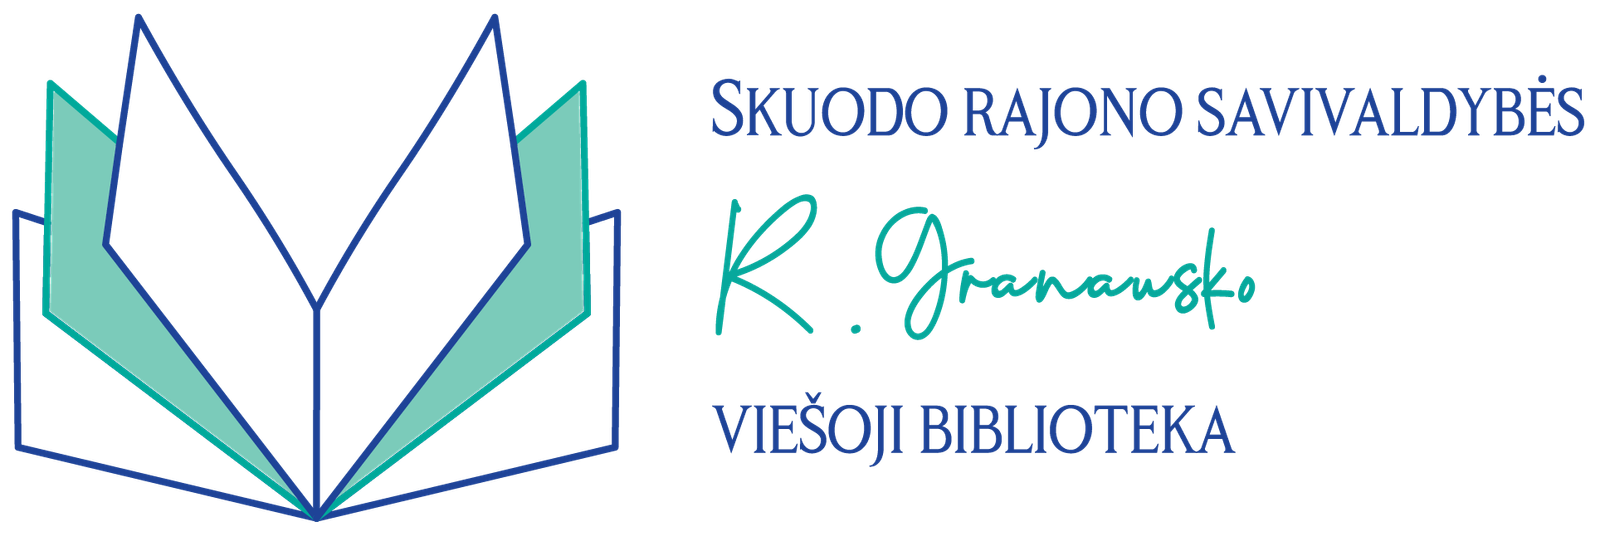 Skuodo bibliotekos logo PNG-01